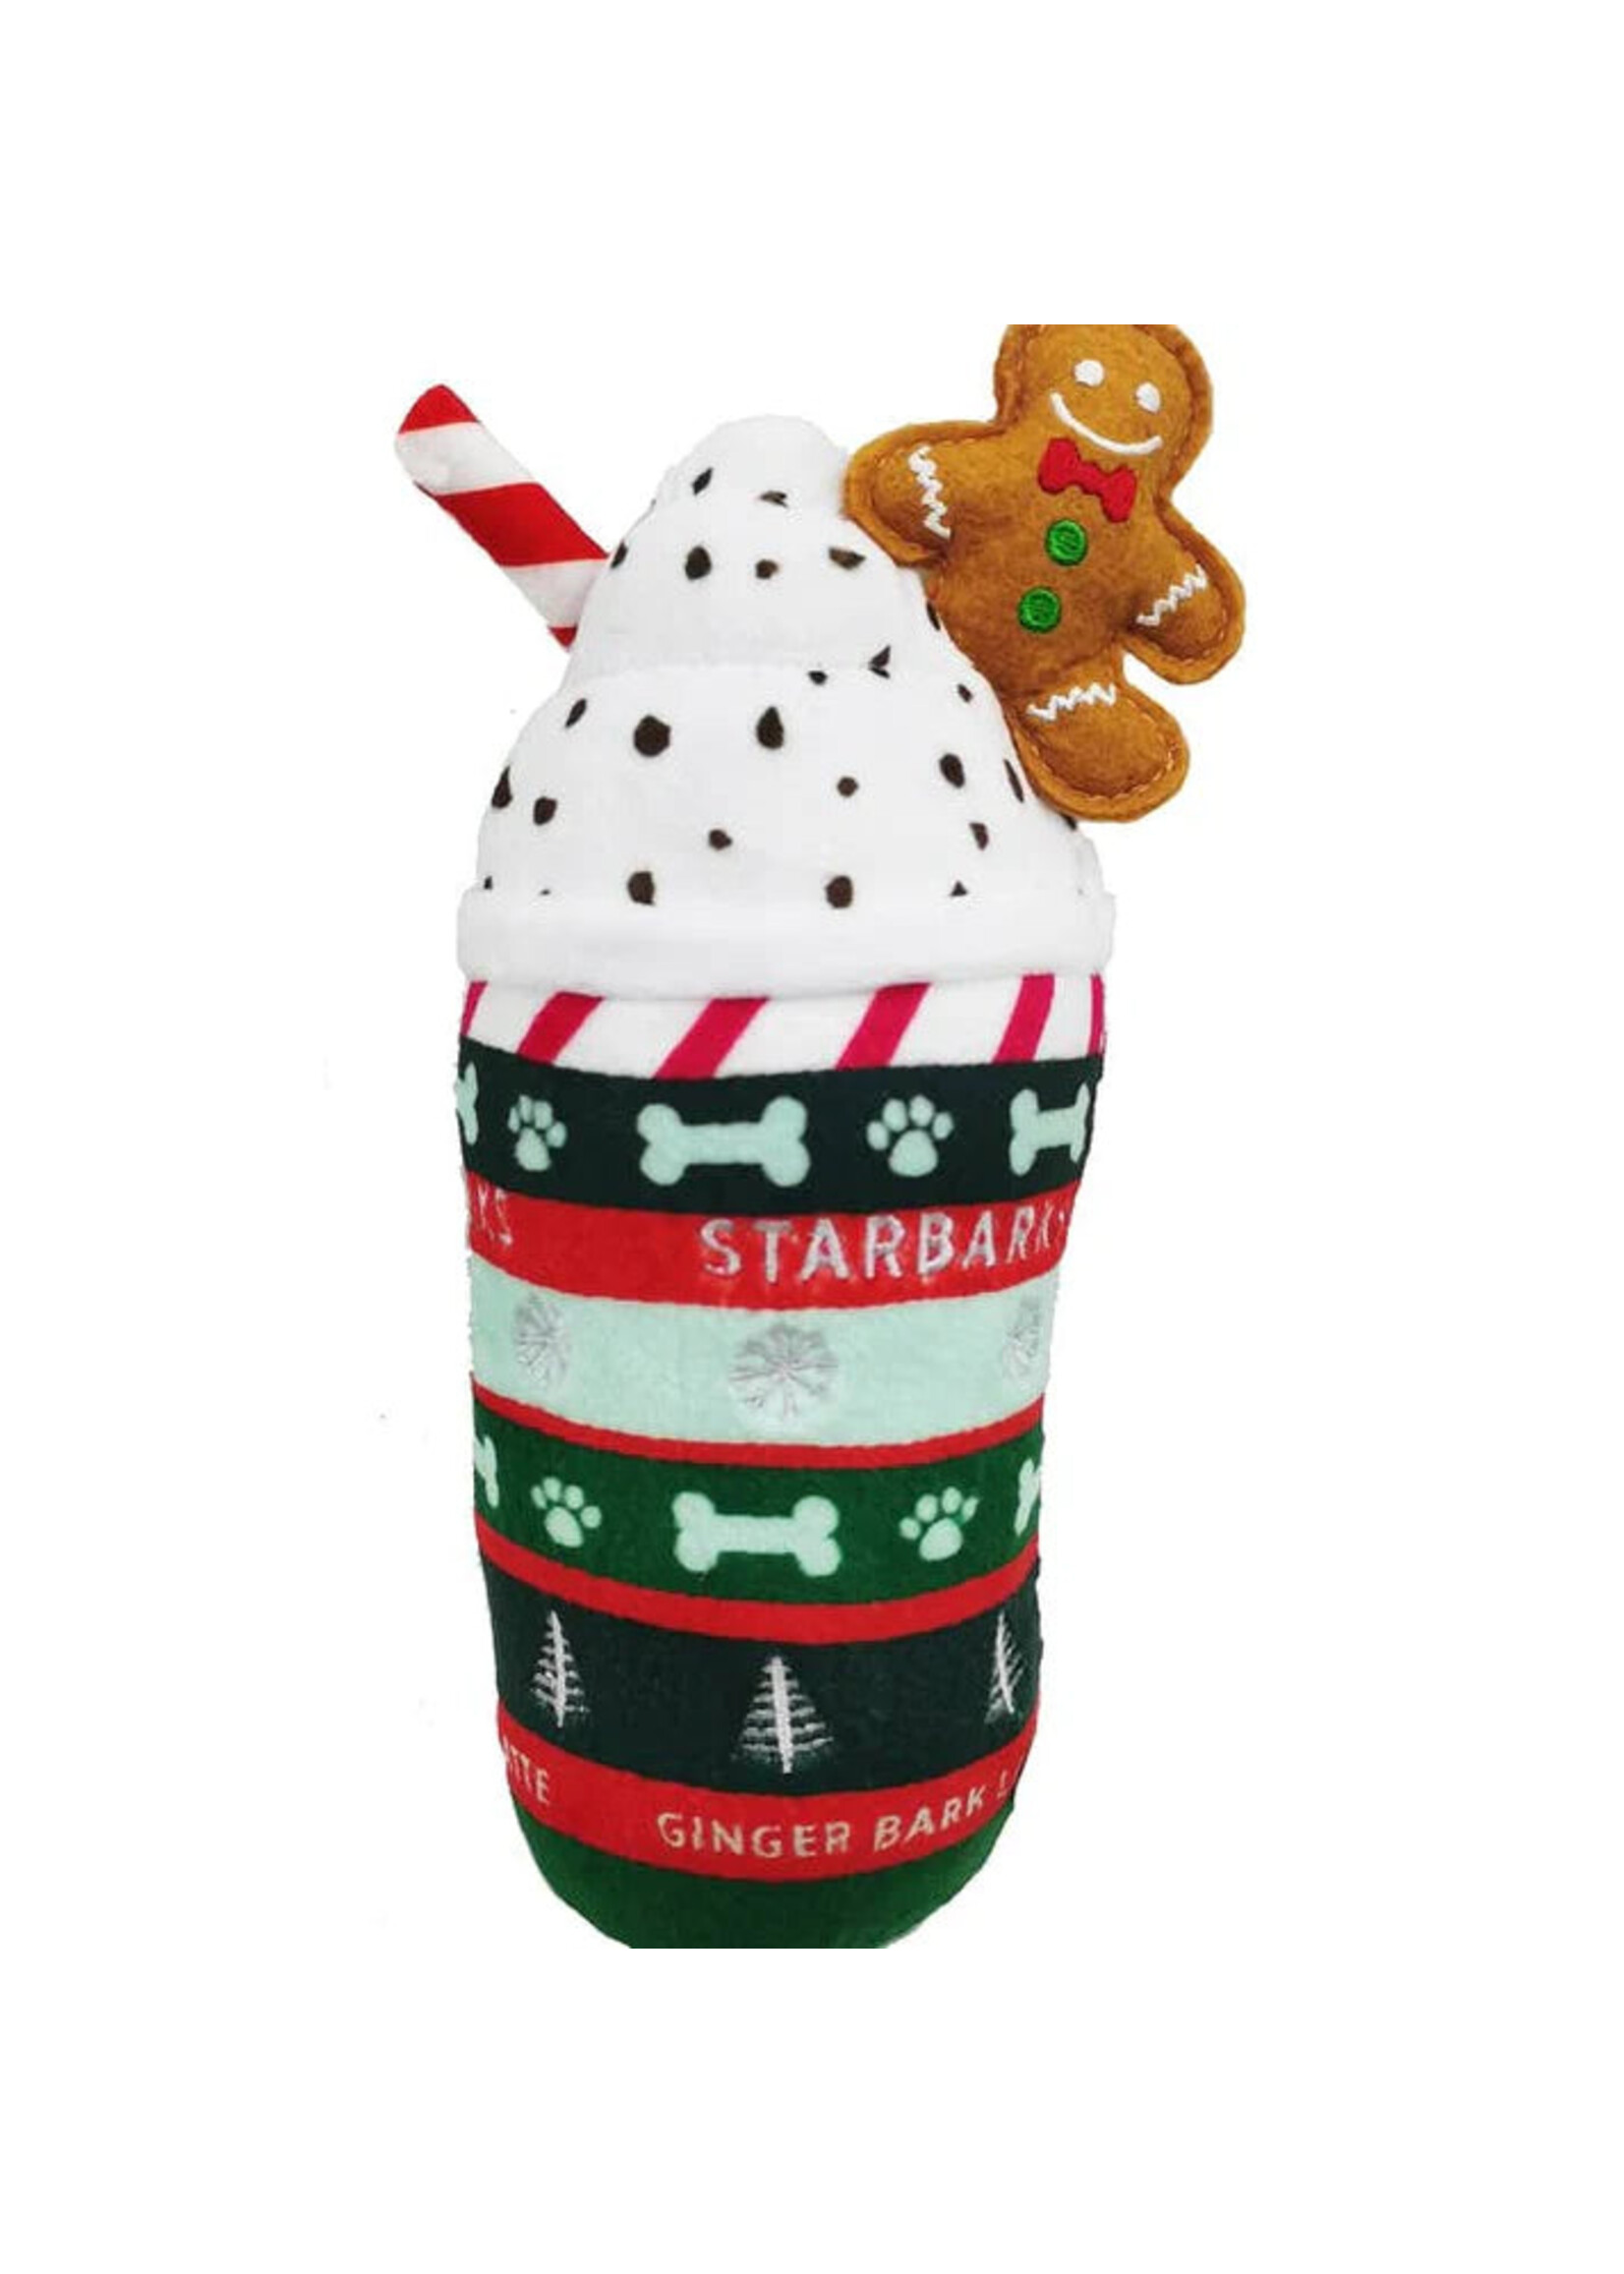 Haute Diggity Dog Starbarks Ginger Bark Latte Christmas